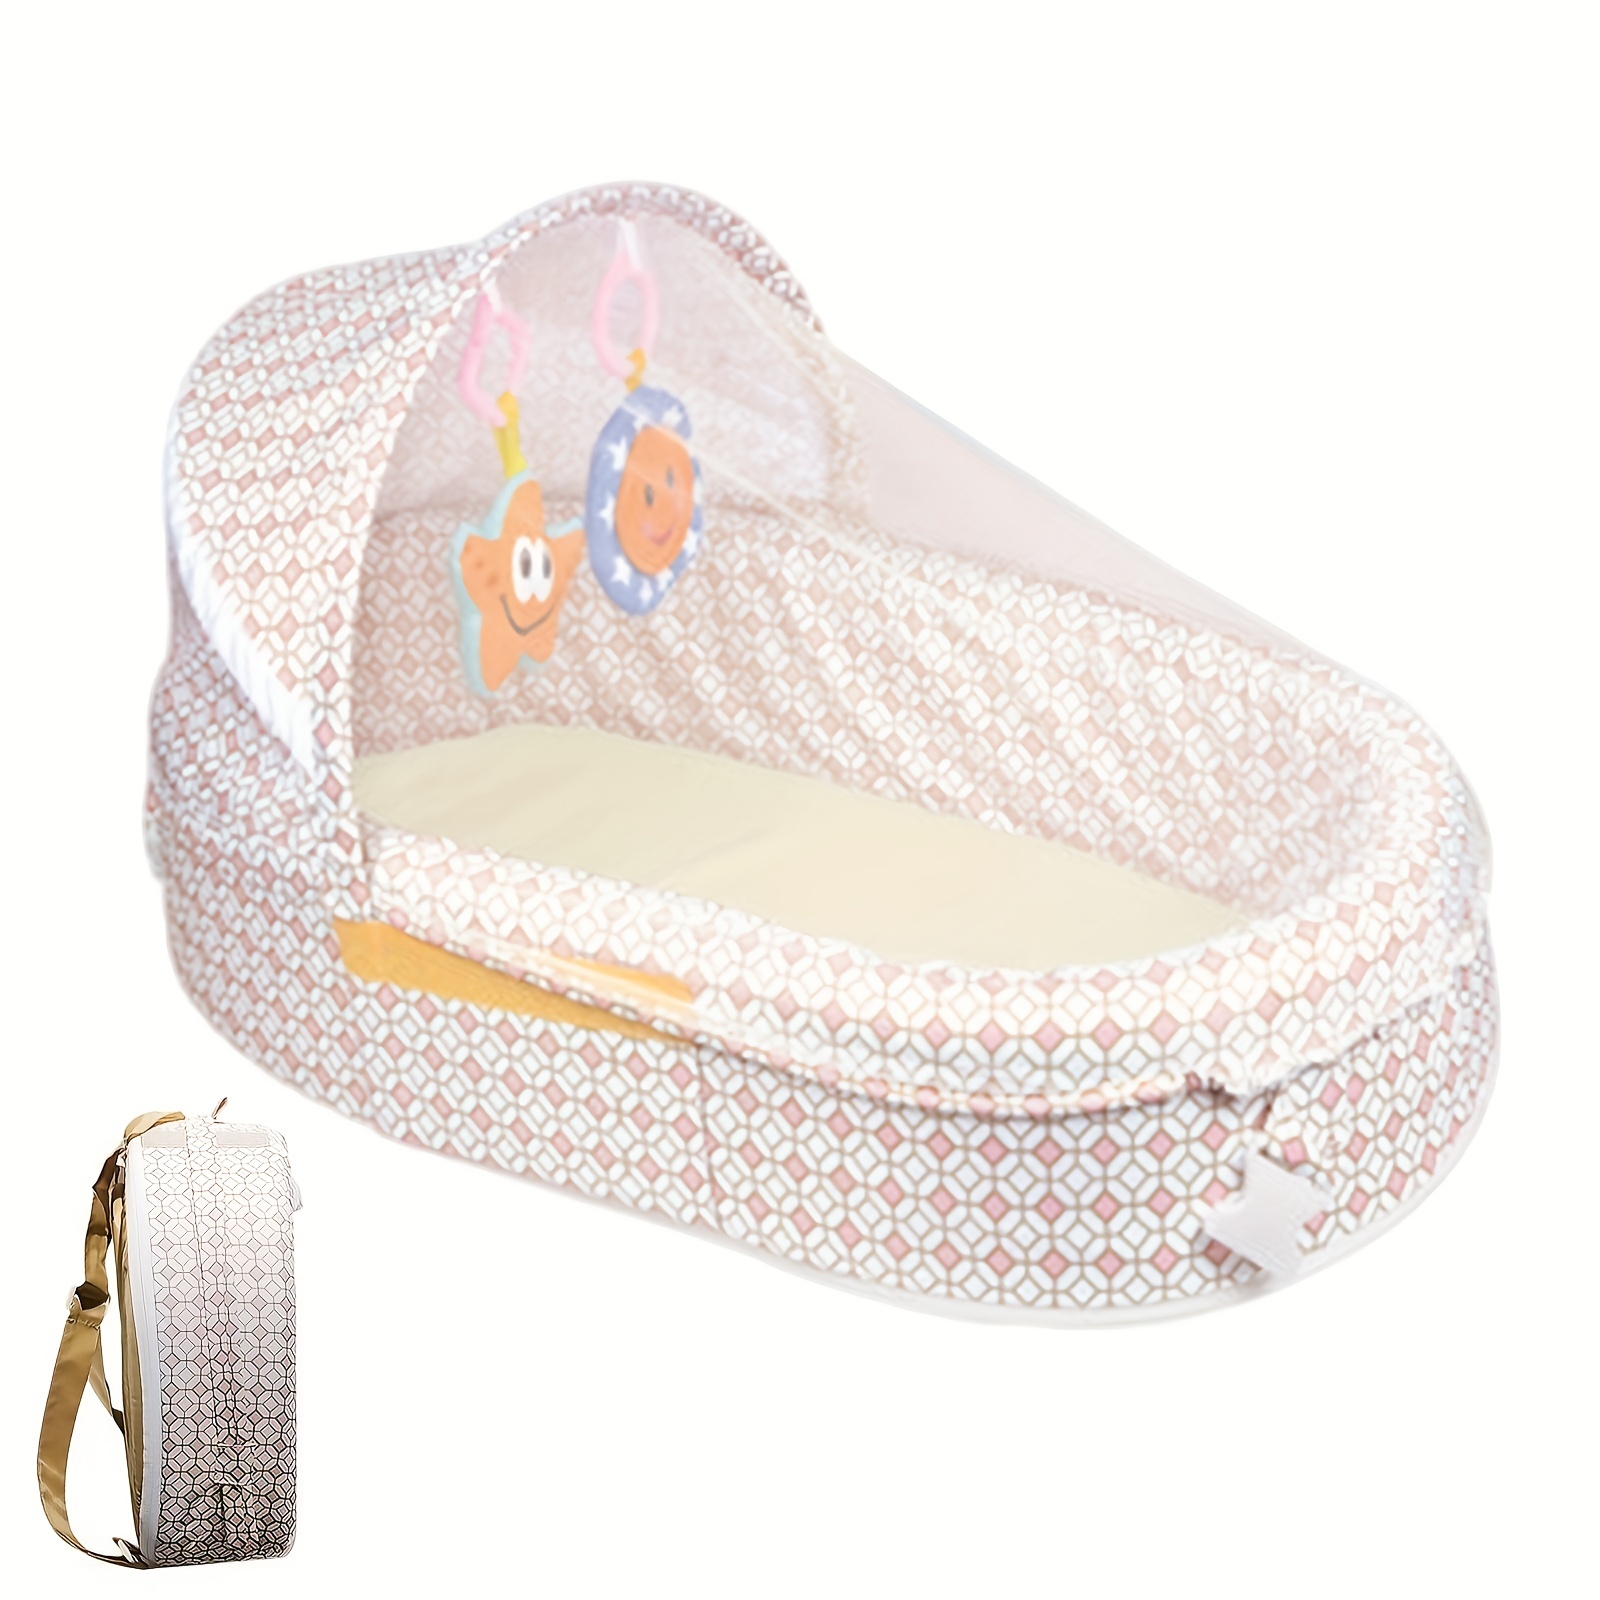 compatibles Lit pliable pour bébé couffin Portable en coton filet de  Protection solaire panier de couchage respirant pour bébé avec jouets